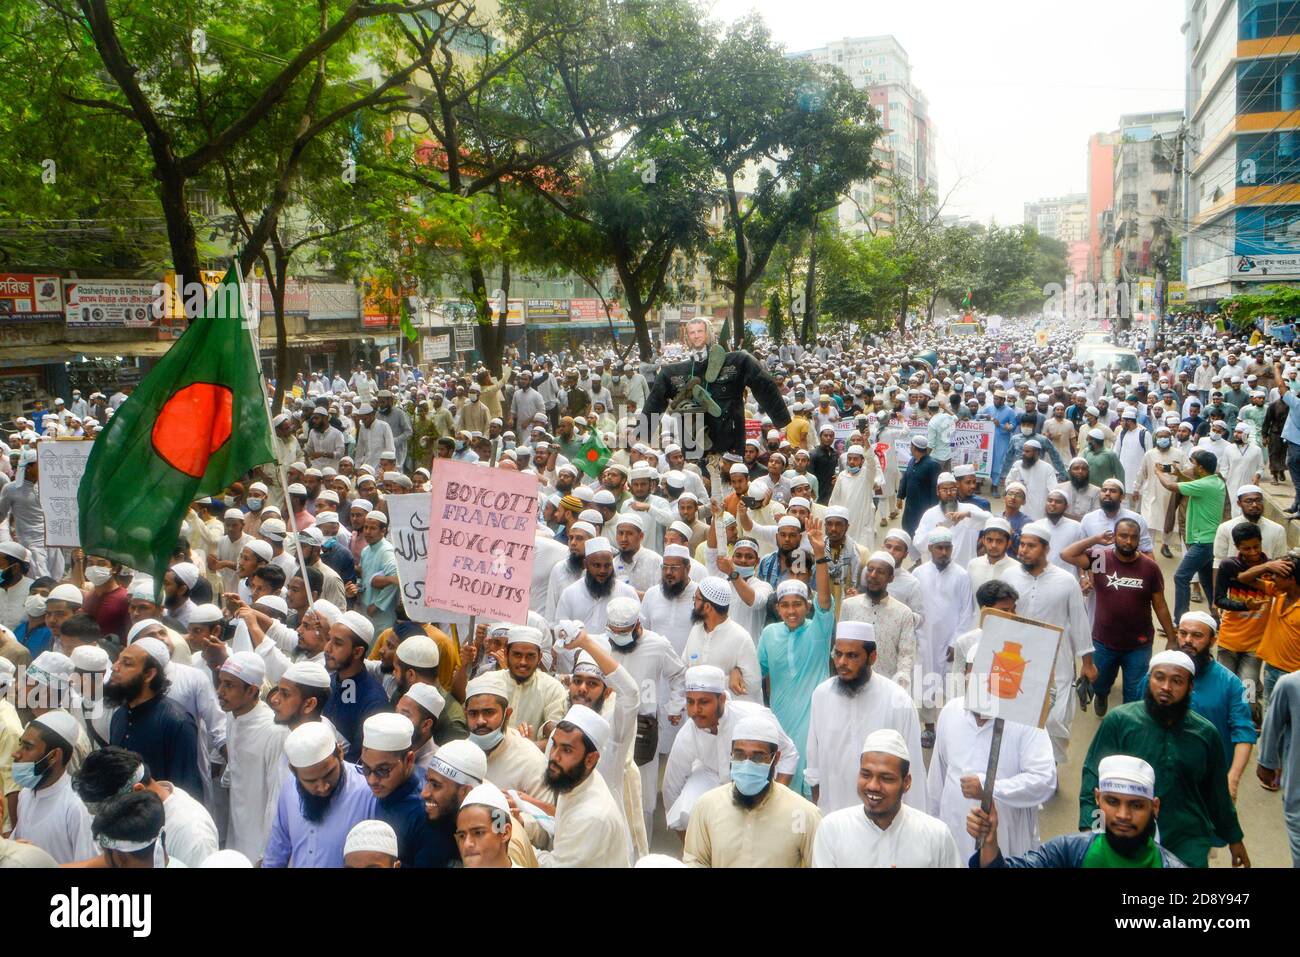 Während des Protestes in Dhaka werden Demonstranten einer islamistischen Partei mit Plakaten, Fahnen und Bildnissen gesehen.Muslime protestieren zum Boykott französischer Produkte und verurteilen Präsident Emmanuel Macron für seine Kommentare über die Karikaturen des Propheten Mohammed. Stockfoto